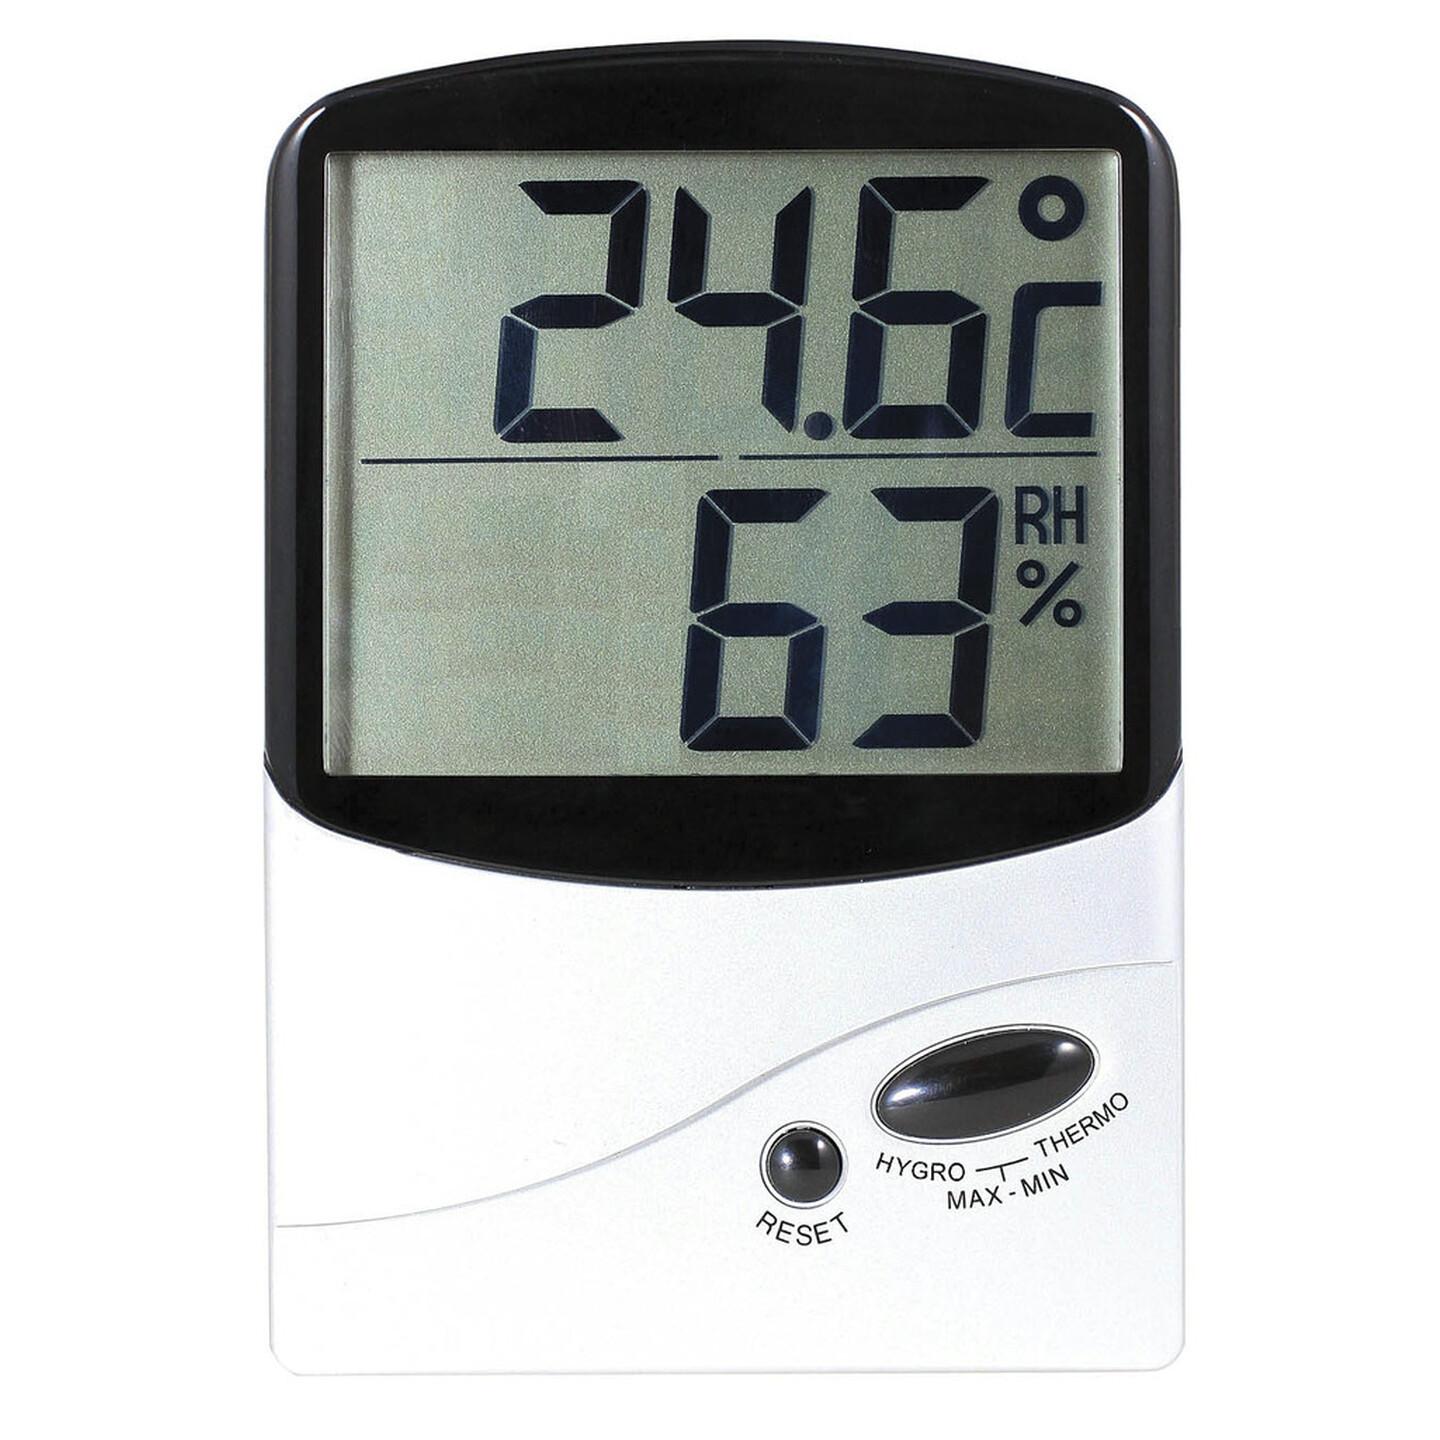 Jumbo Display Thermometer/Hygrometer